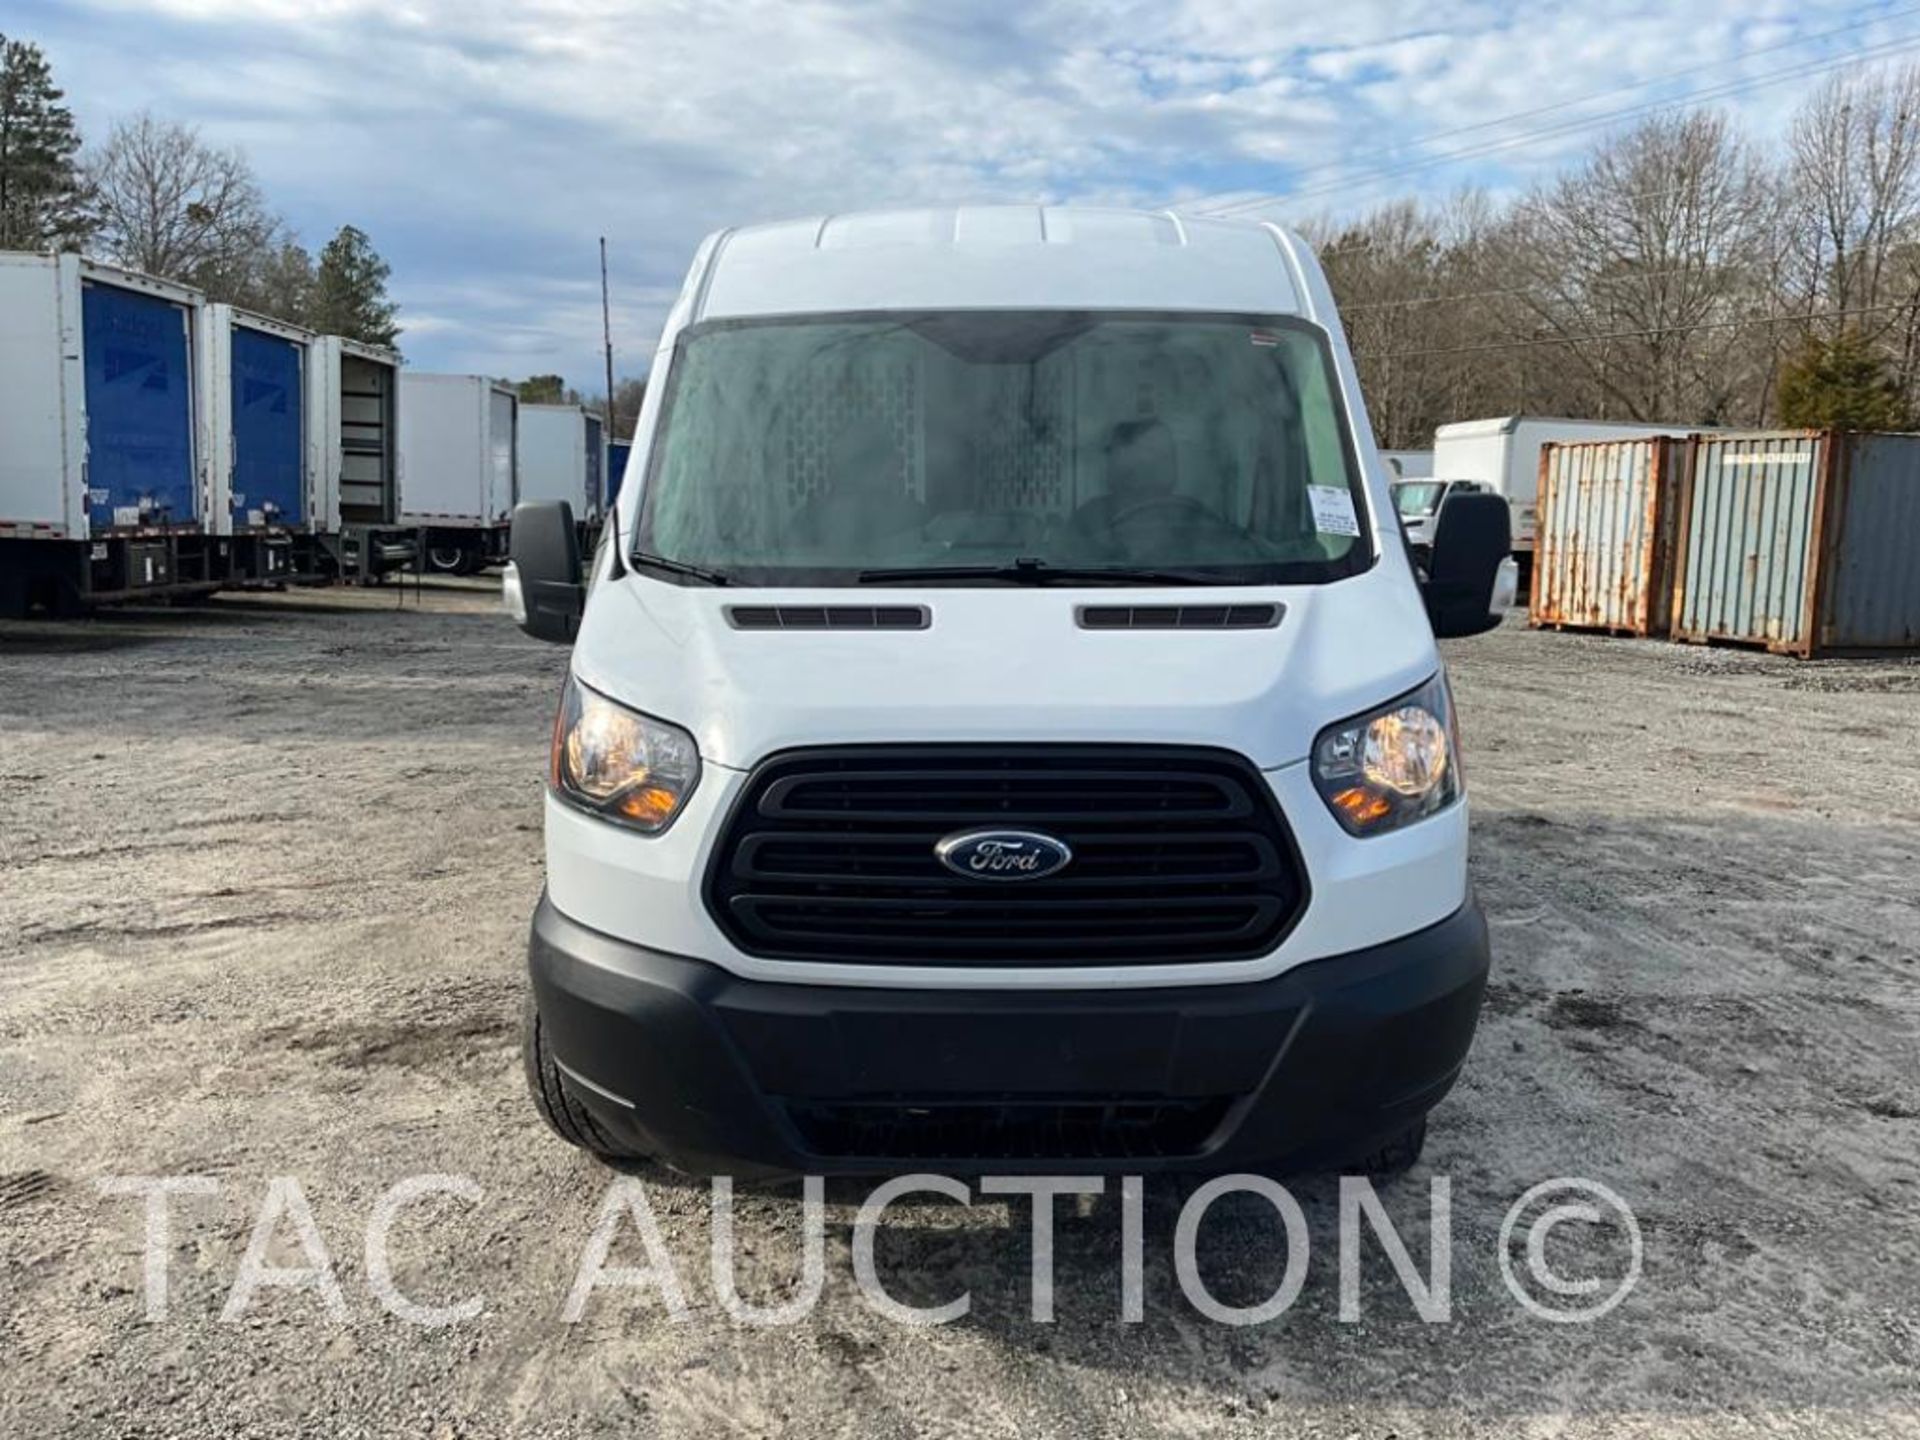 2019 Ford Transit 150 Cargo Van - Image 8 of 44